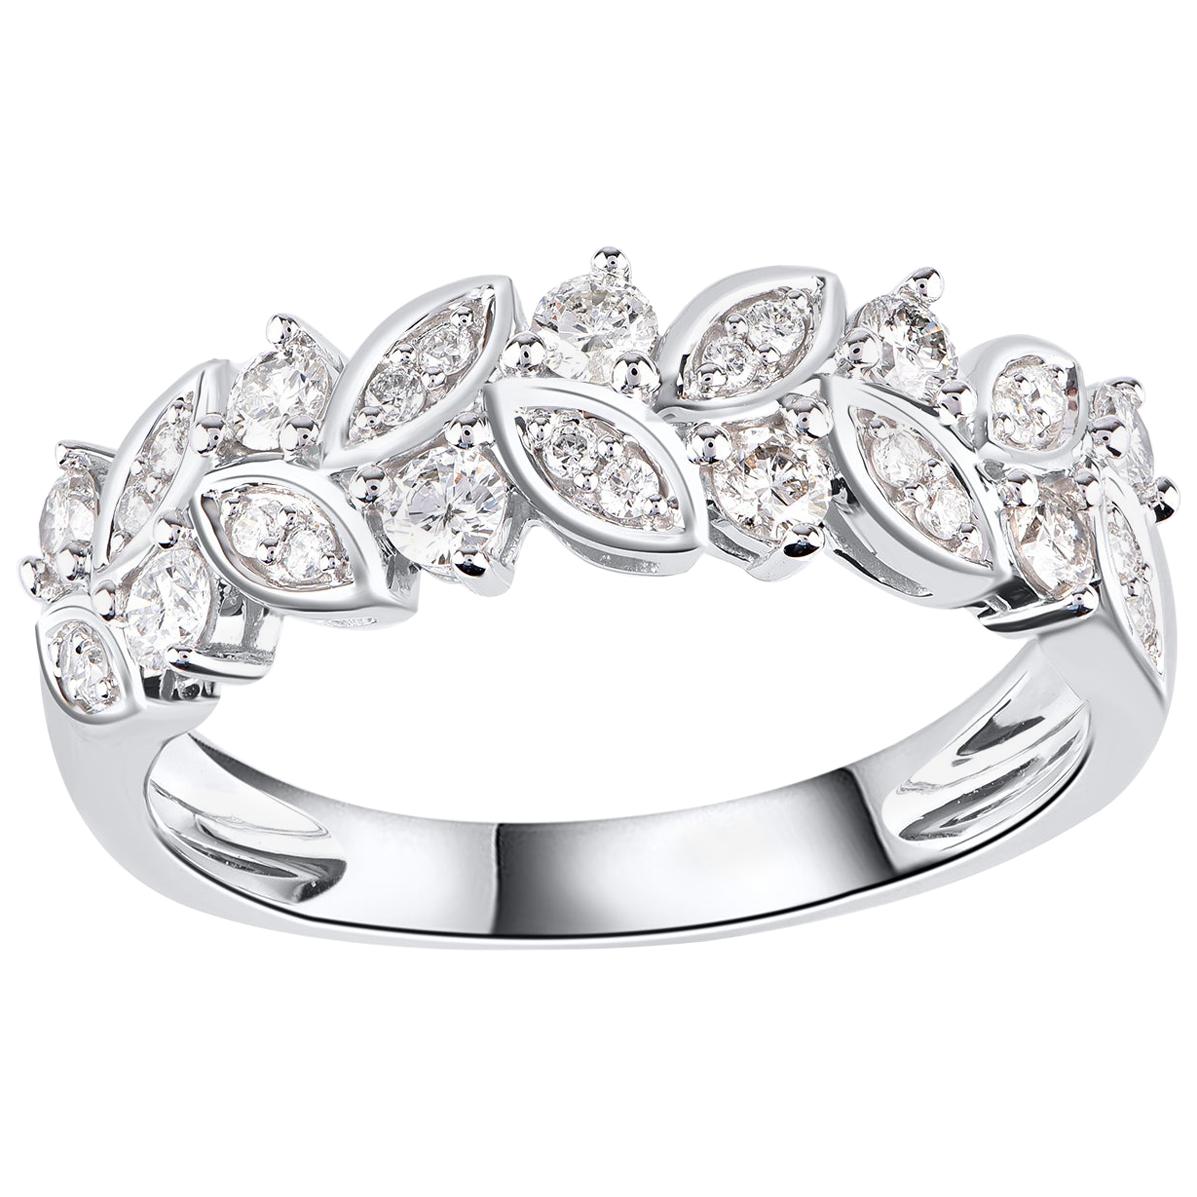 TJD 0.50 Carat Round Diamond 14 Karat White Gold Leaf Petal Wedding Band Ring